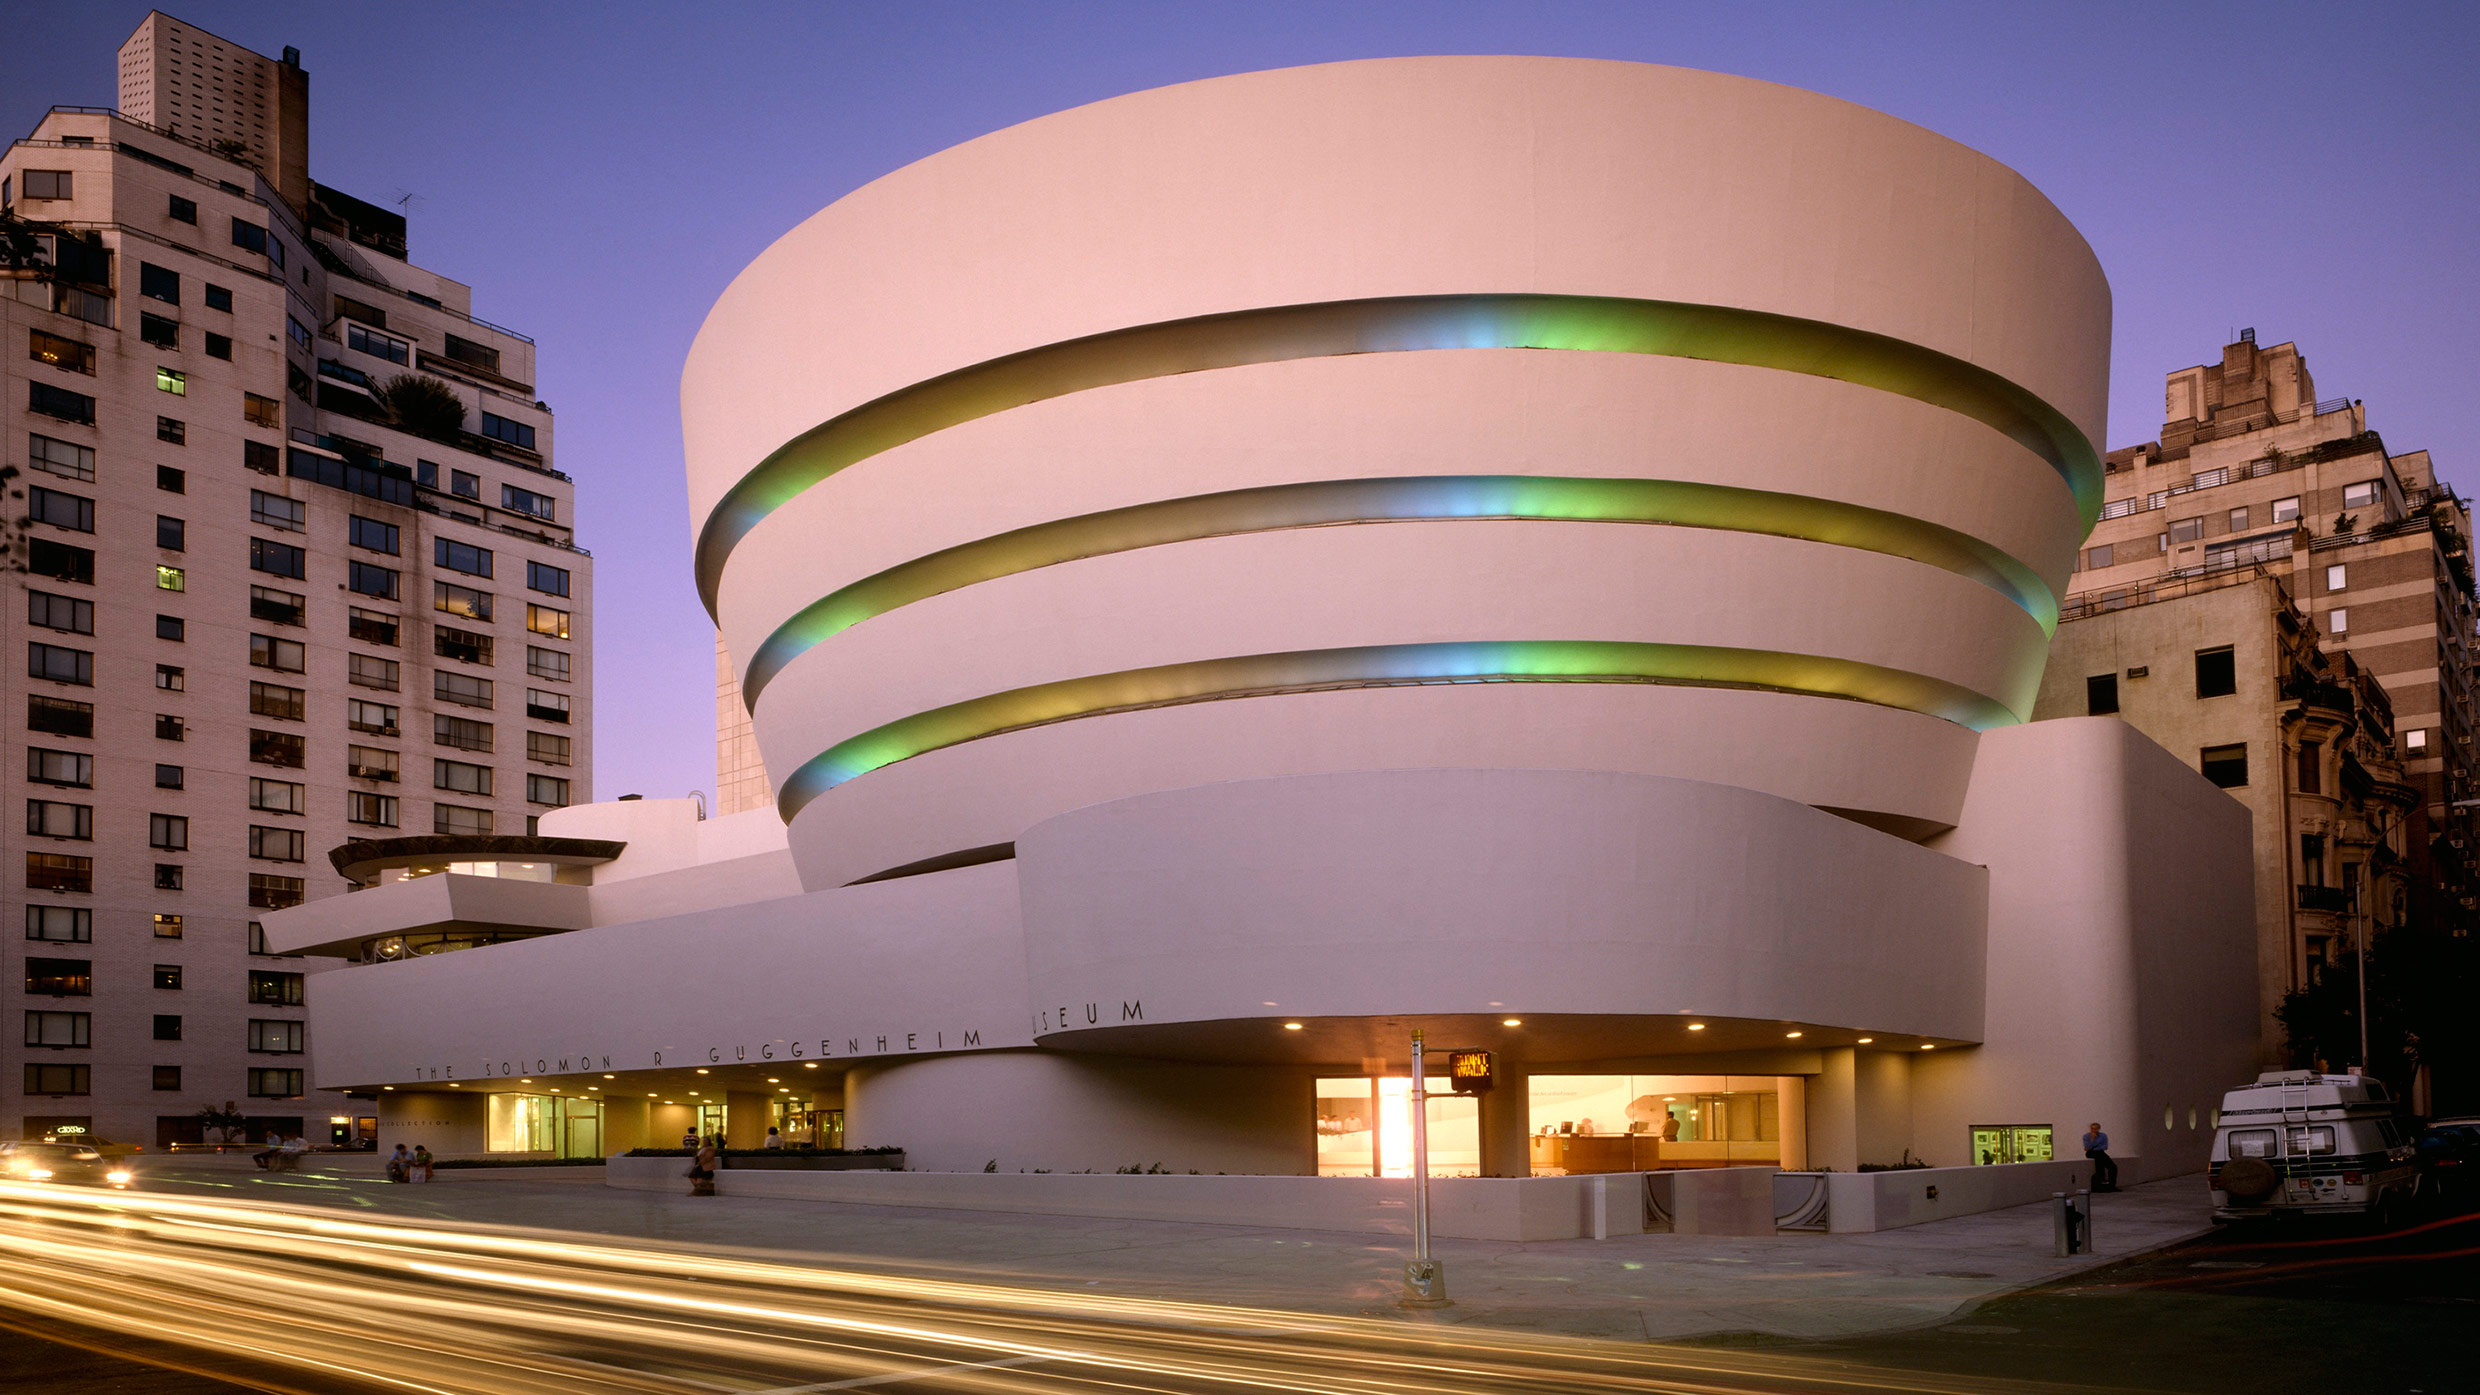 Quanto costa visitare un museo? (E intanto il biglietto del Guggenheim sale a 30 dollari…)